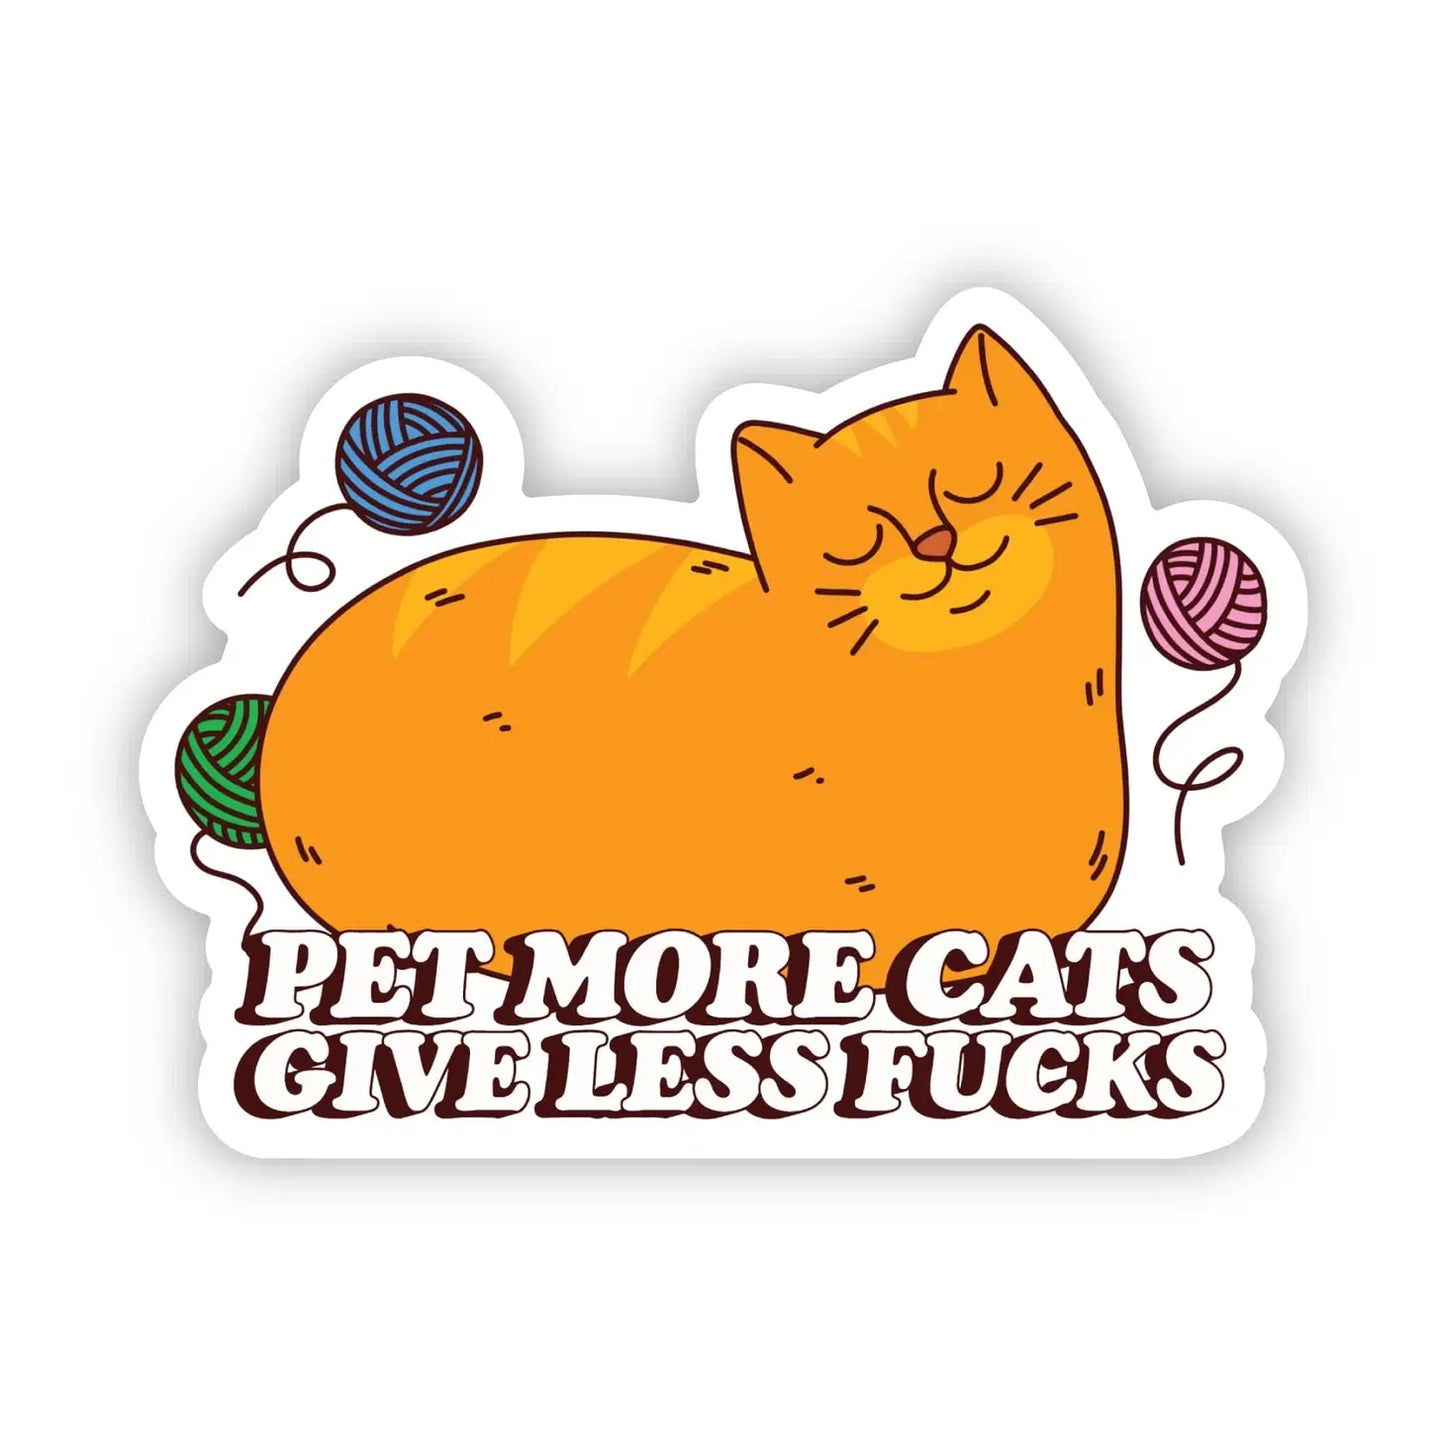 Pet More Cats Sticker